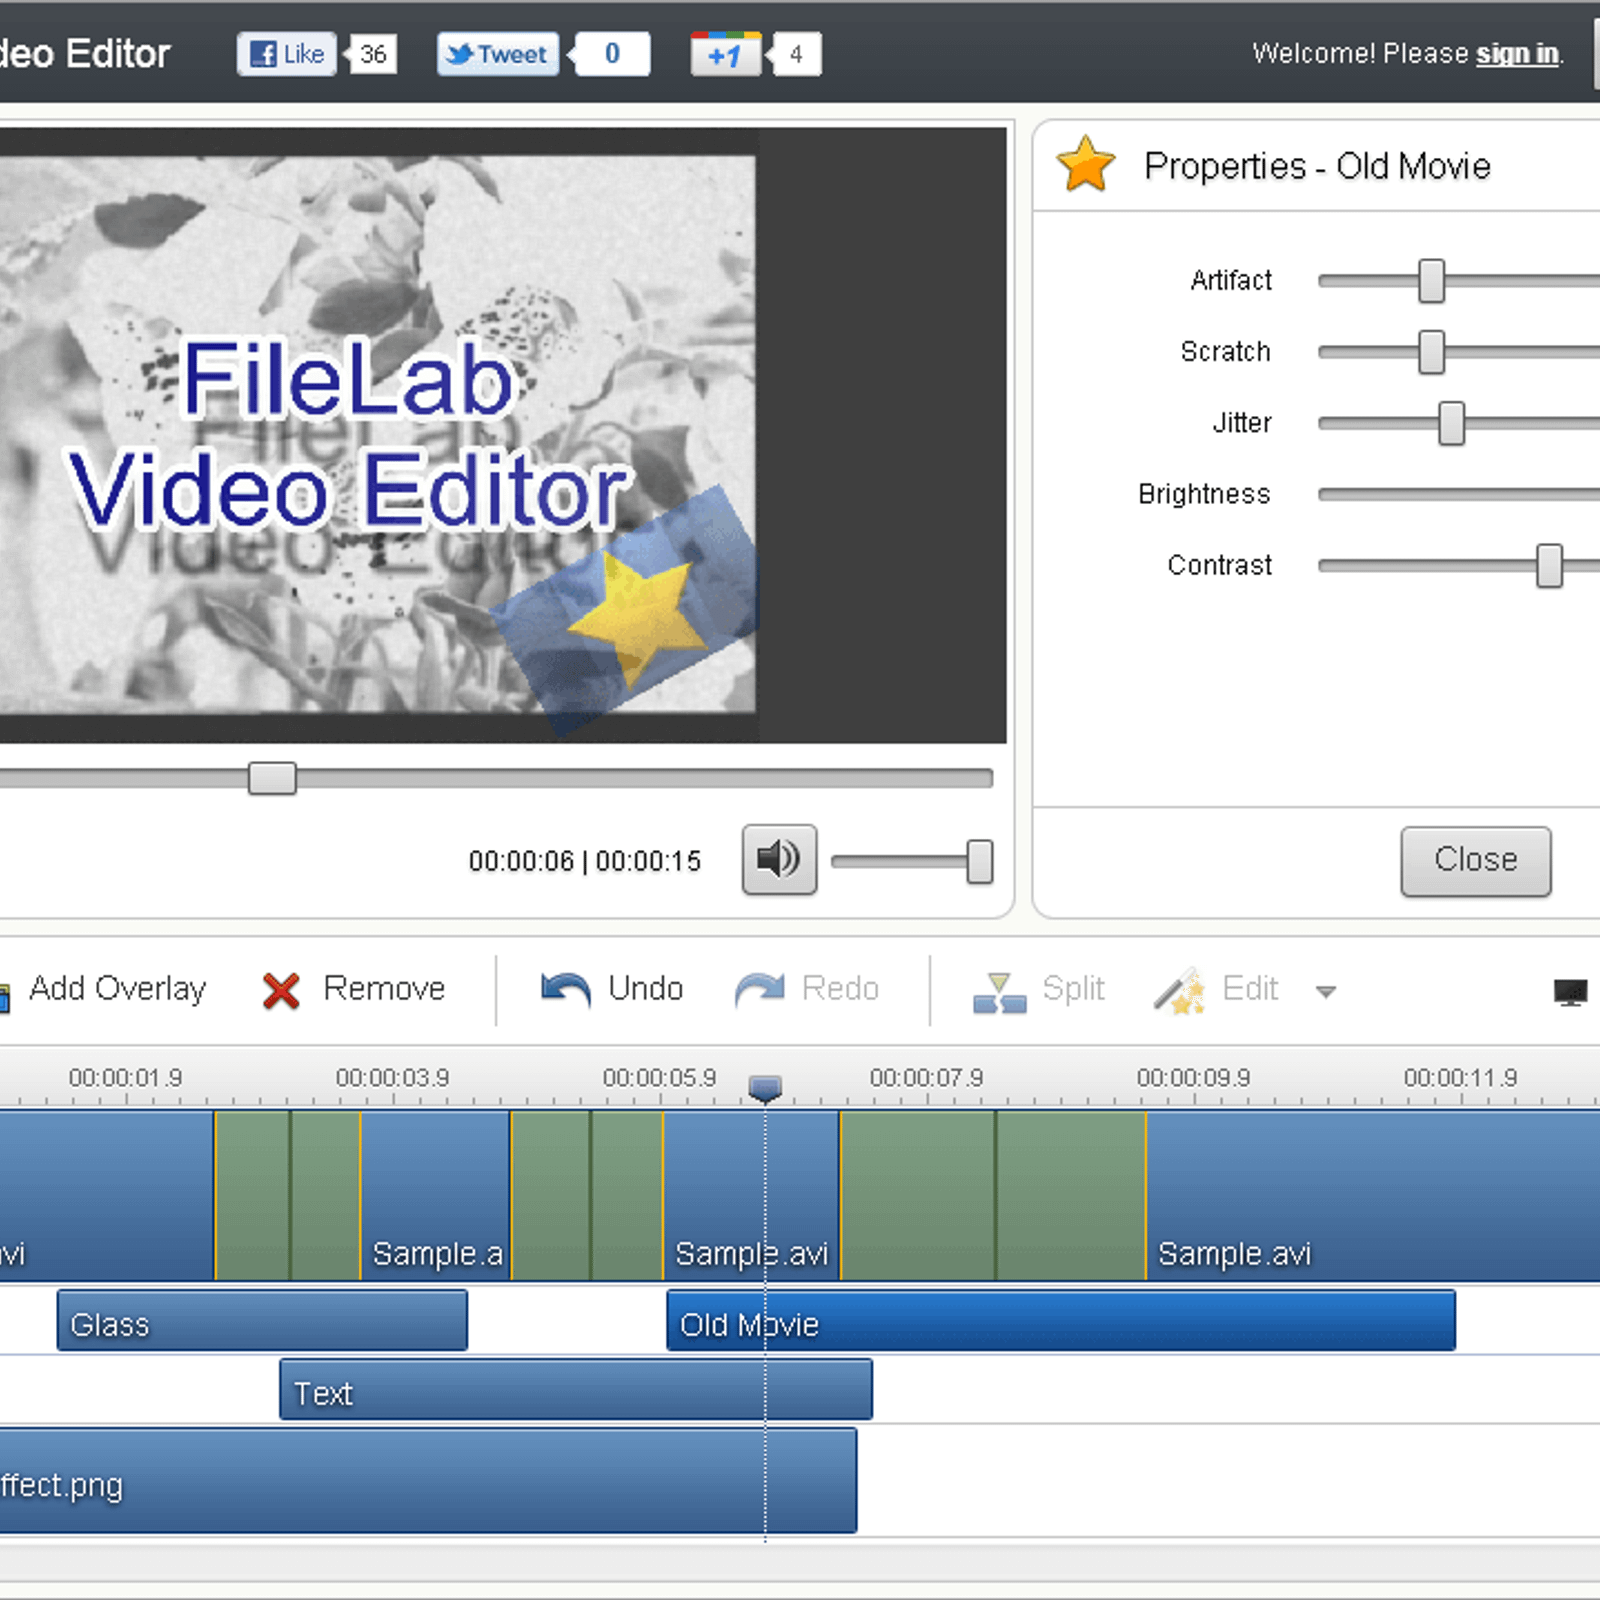 FileLab Video Editor Alternatives